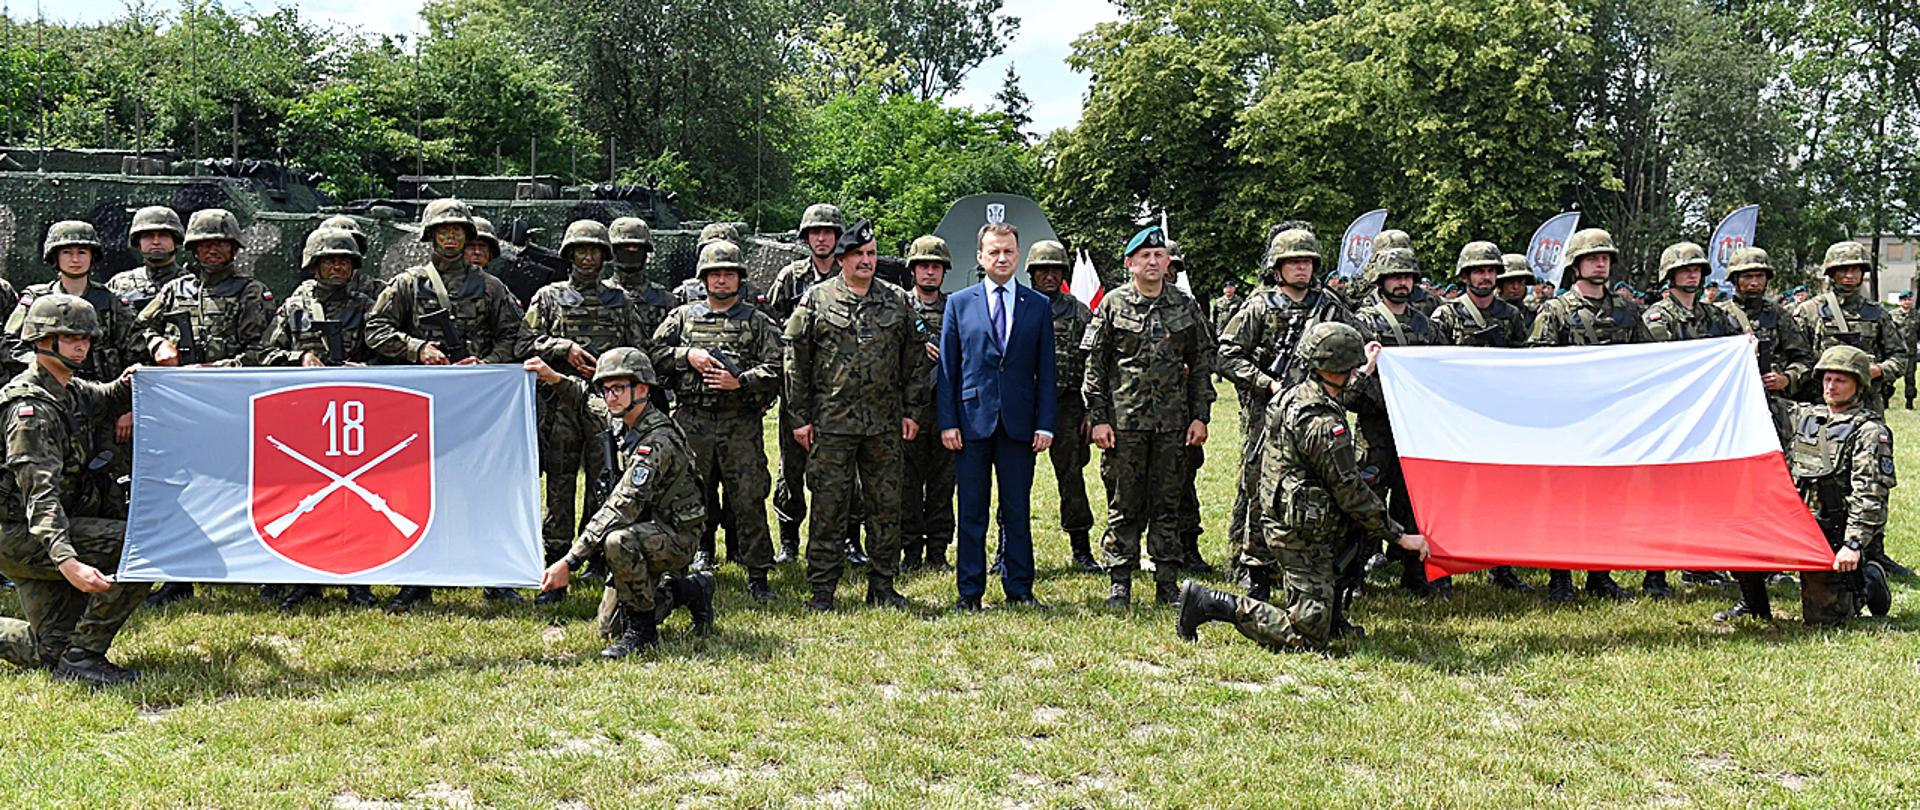 Minister Mariusz Błaszczak stoi z żołnierzami Wojska Polskiego podczas wizyty w 18. Dywizji Zmechanizowanej. Po prawej stronie żołnierze trzymają flagę z oznaką Dywizji. Po prawej flagę Polski. W tle sprzęt wojskowy i roślinność.